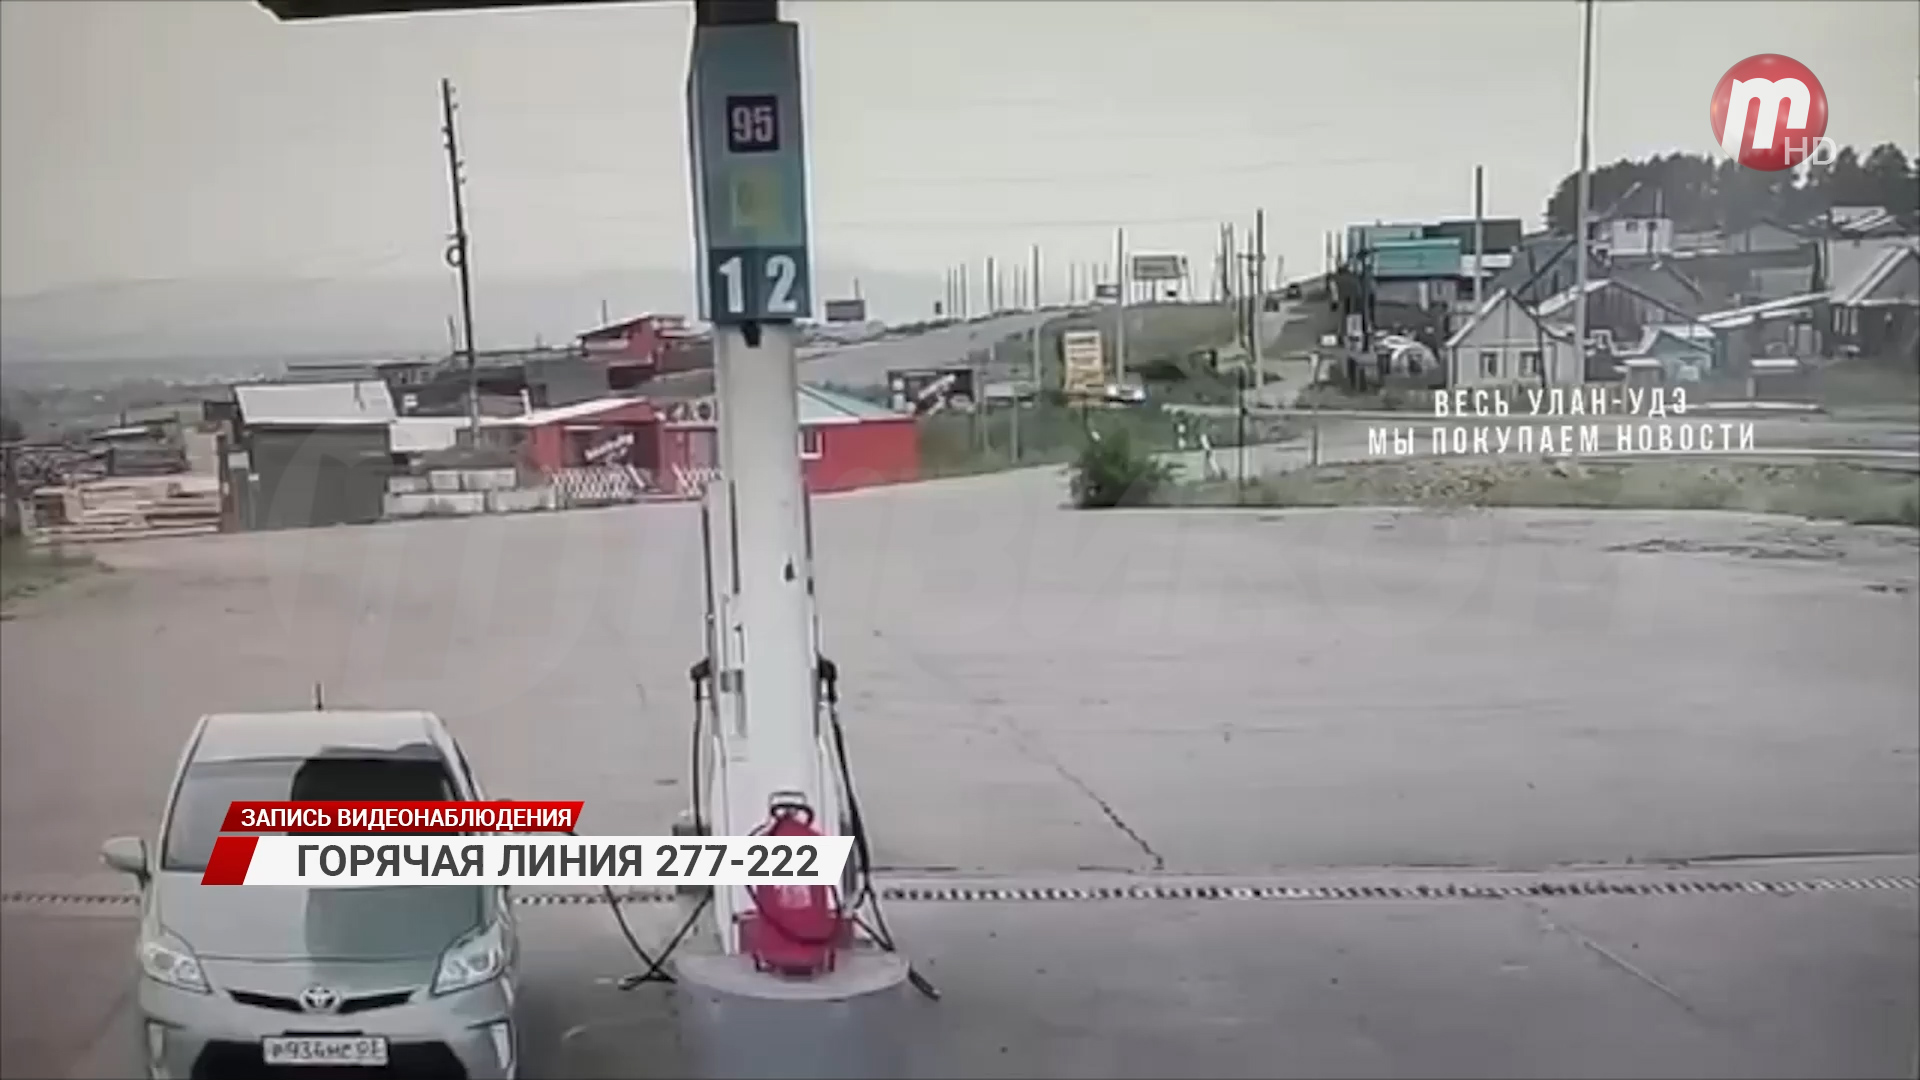 Страшная авария в пригороде Улан-Удэ